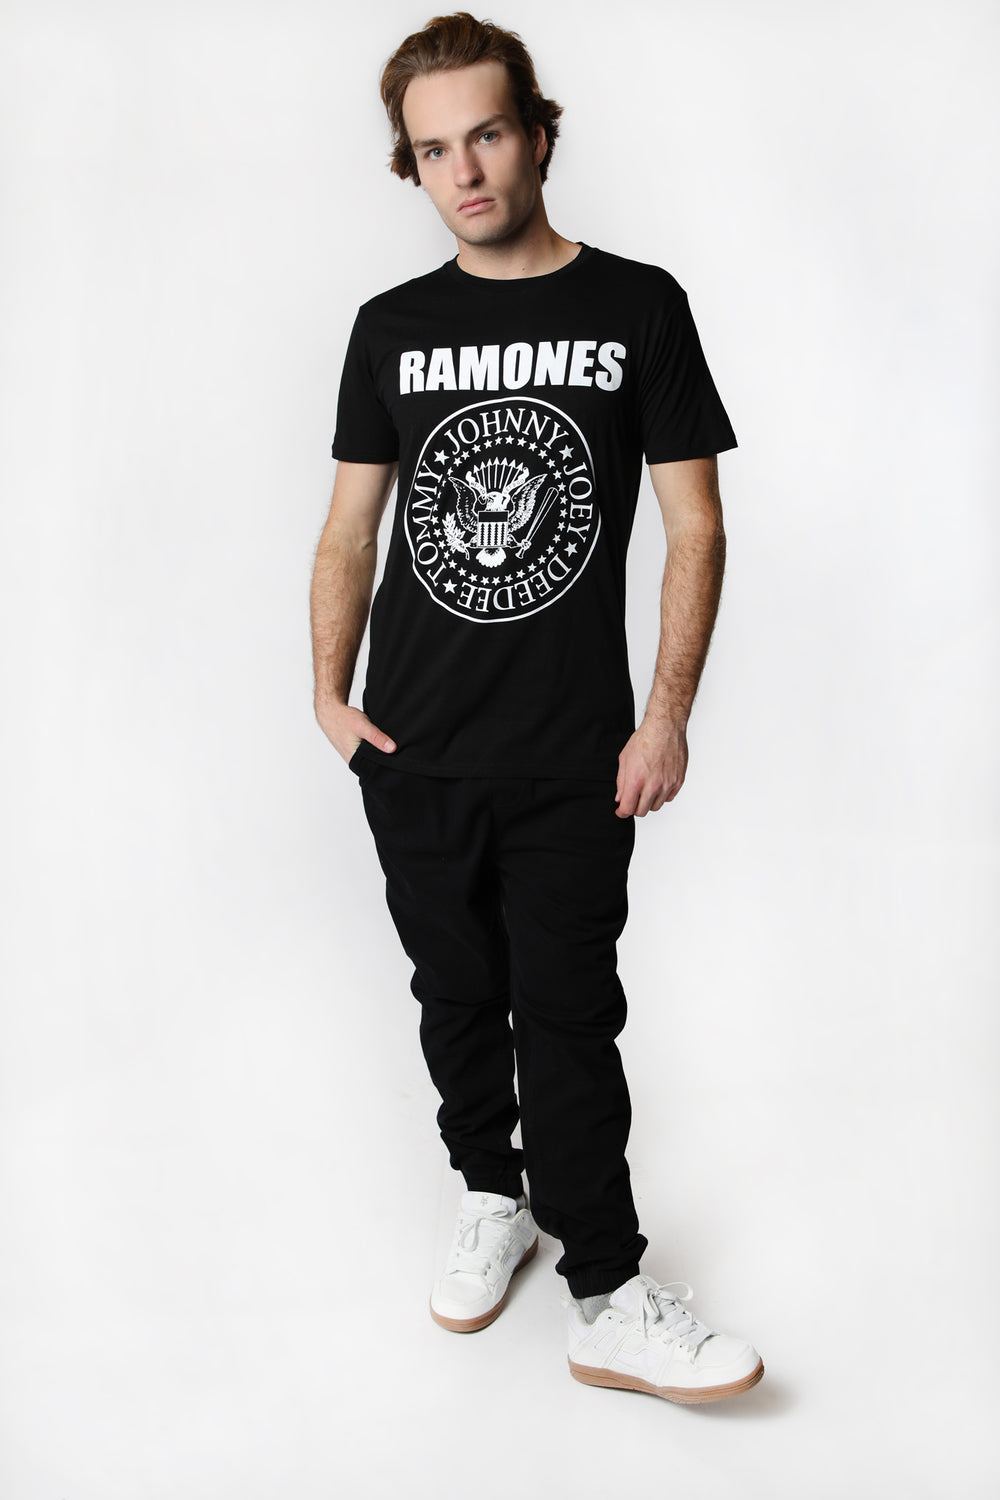 T-Shirt Imprimé Emblème Ramones Homme T-Shirt Imprimé Emblème Ramones Homme